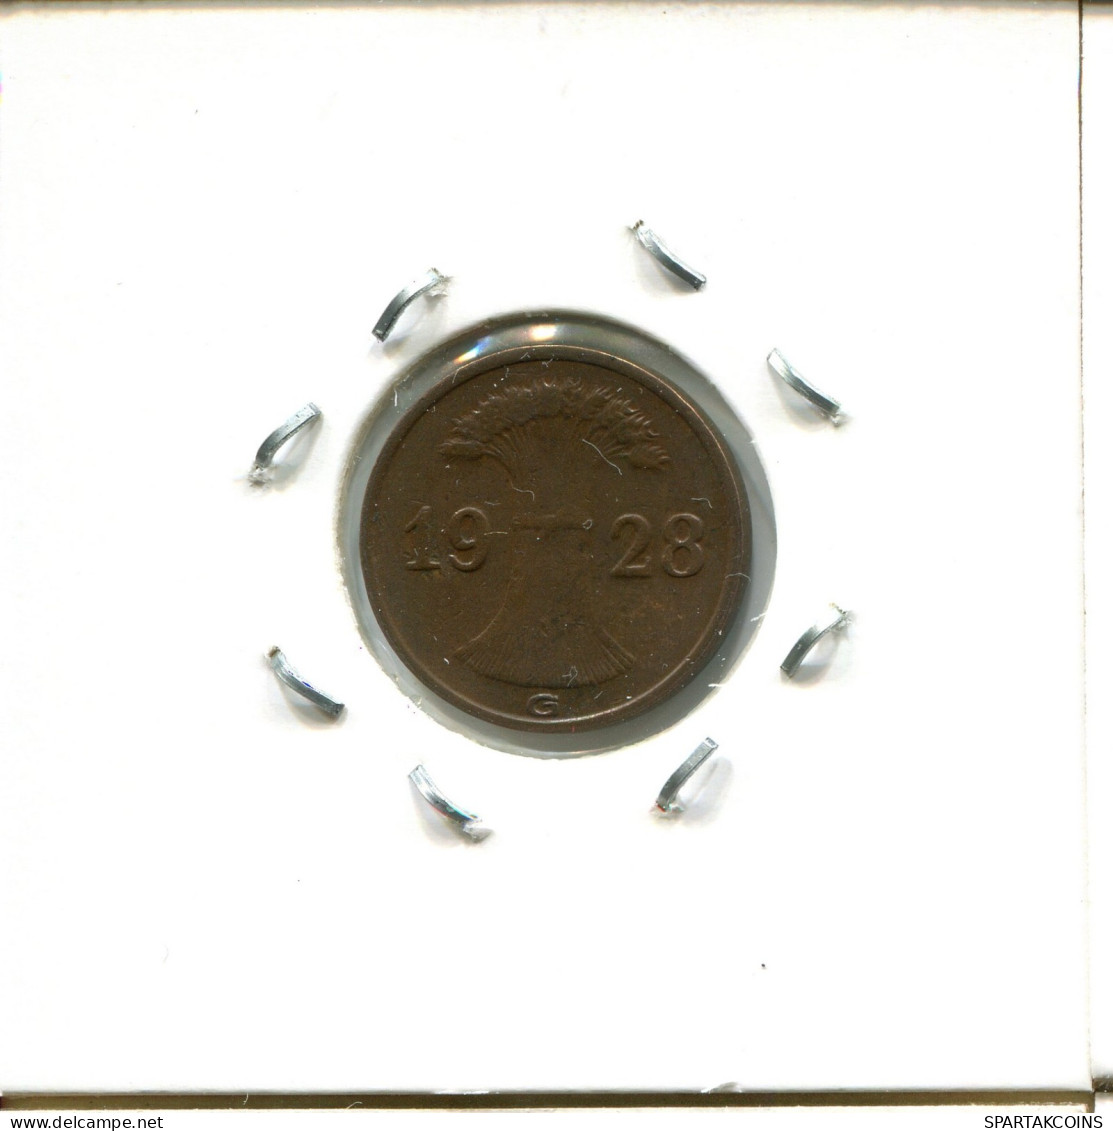 1 RENTENPFENNIG 1928 G ALEMANIA Moneda GERMANY #DA452.2.E.A - 1 Rentenpfennig & 1 Reichspfennig